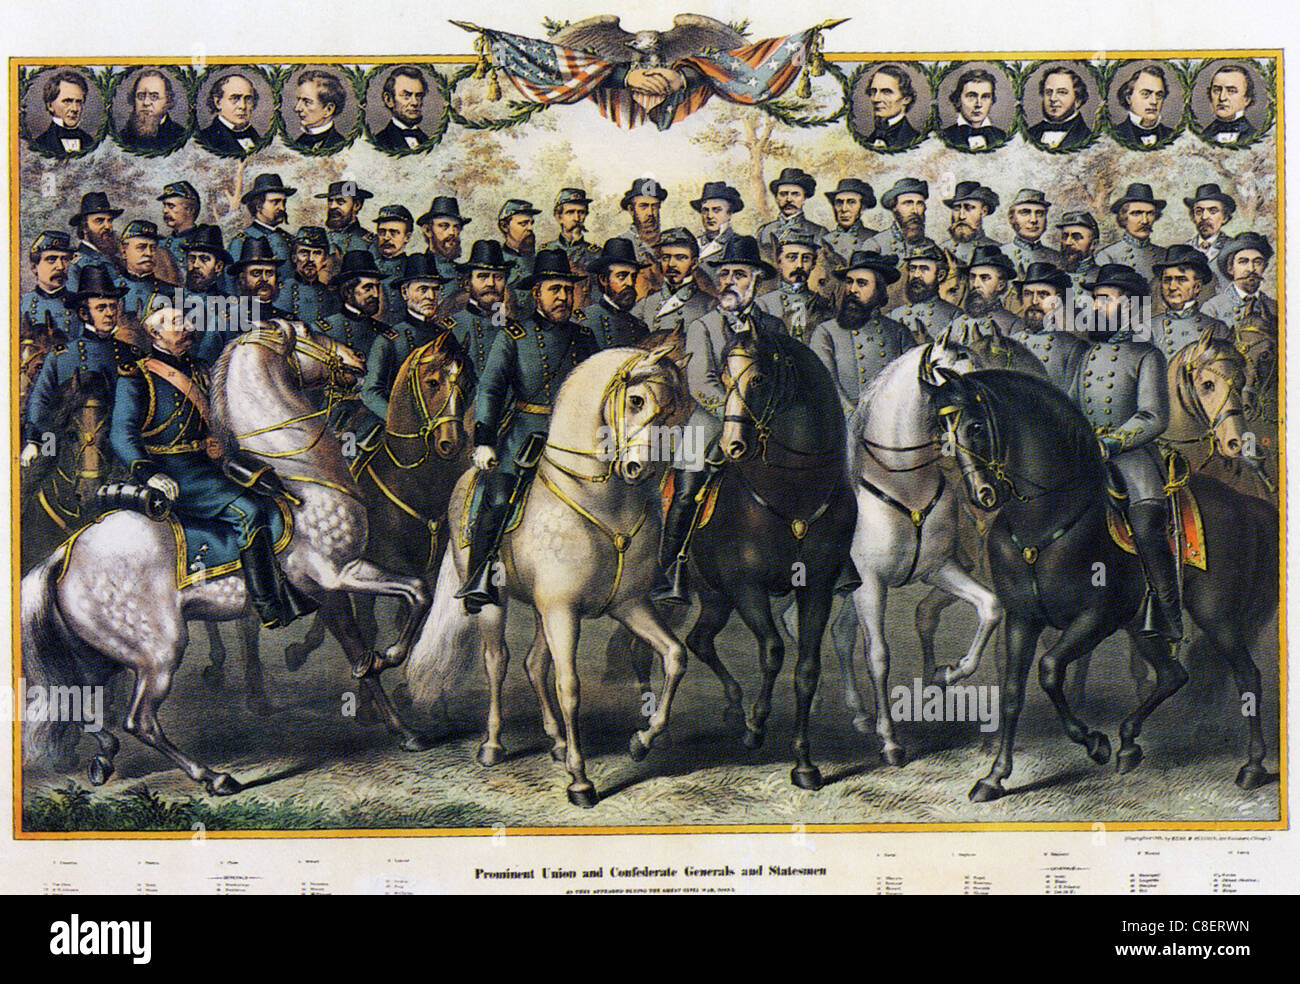 Guerre civile américaine Portraits des principaux participants militaires et politiques des deux côtés publié en 1885 Banque D'Images